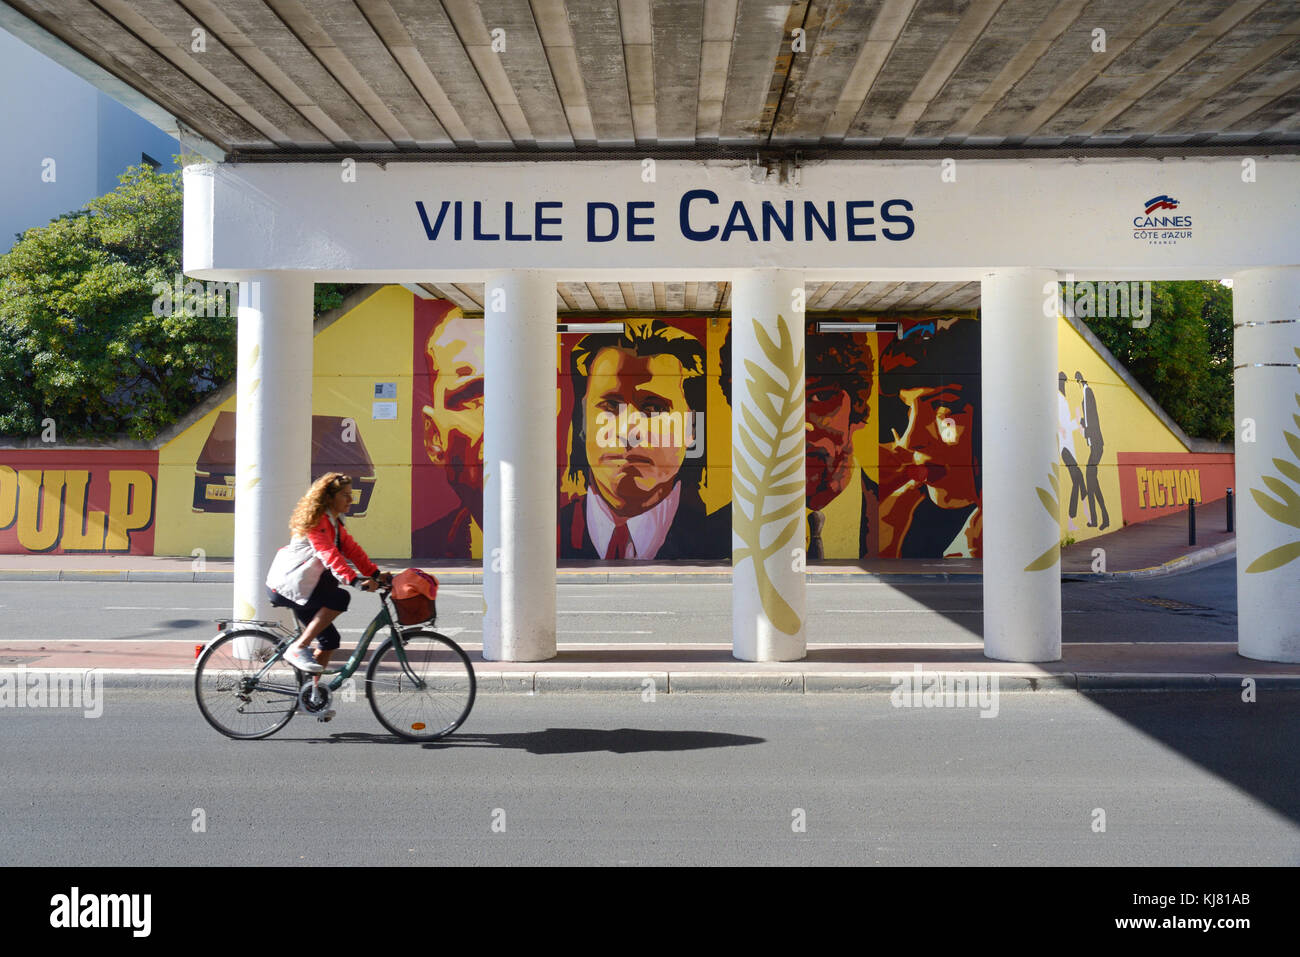 Cannes Unterführung mit Pulp Fiction Wandgemälde oder Wandbild Feiern das Cannes Film Festival & Film Industrie, am südlichen Ende von La Croisette Stockfoto